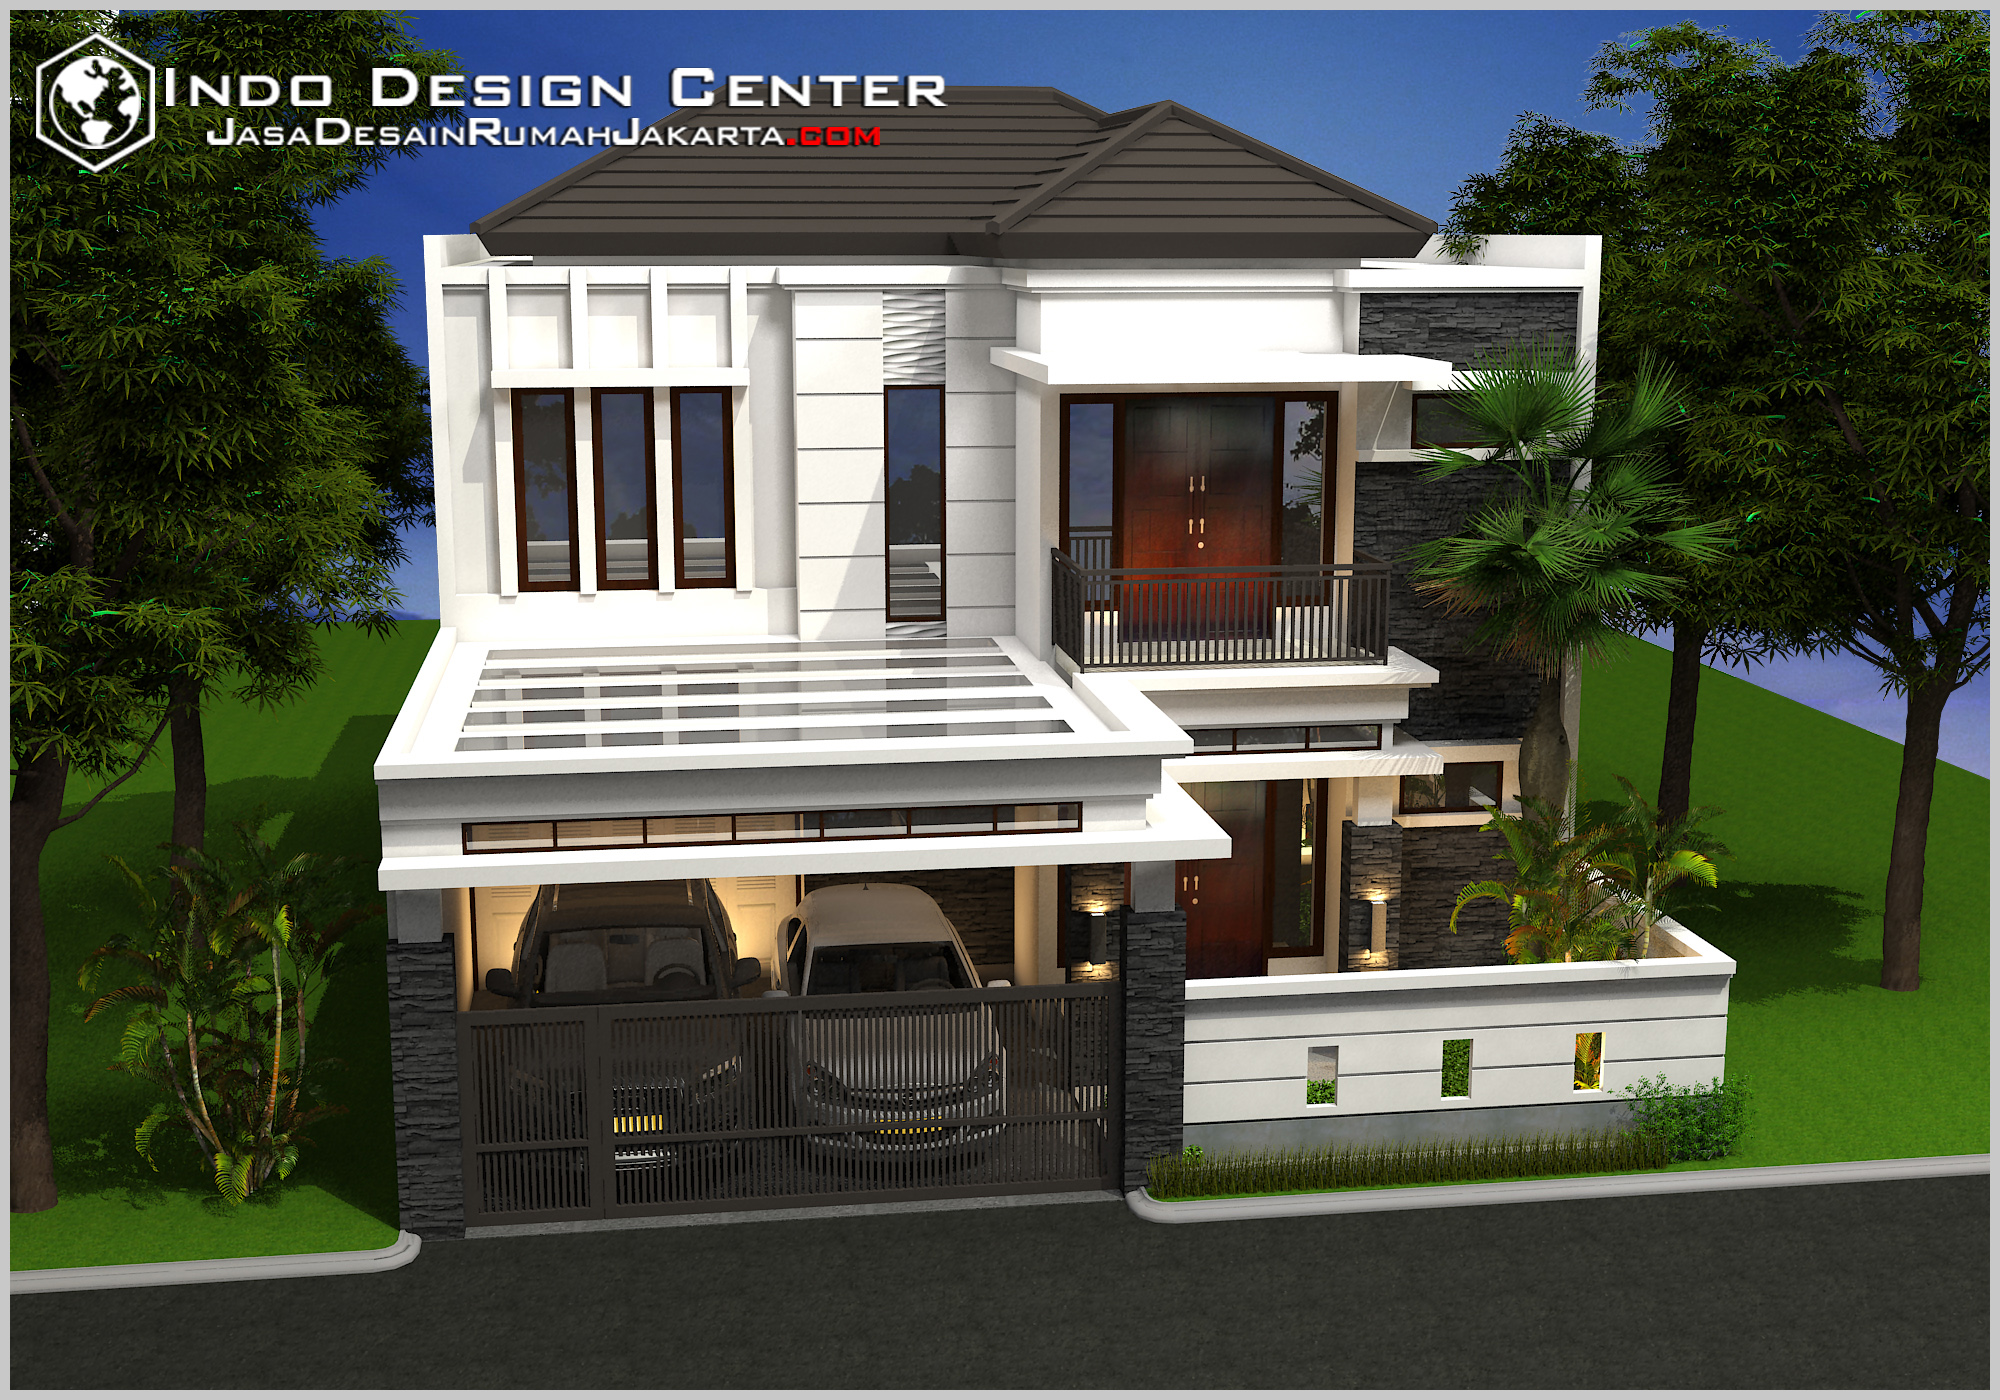 Gambar Desain Rumah Terbaru, Jasa Desain Rumah Jakarta - 021 40101010